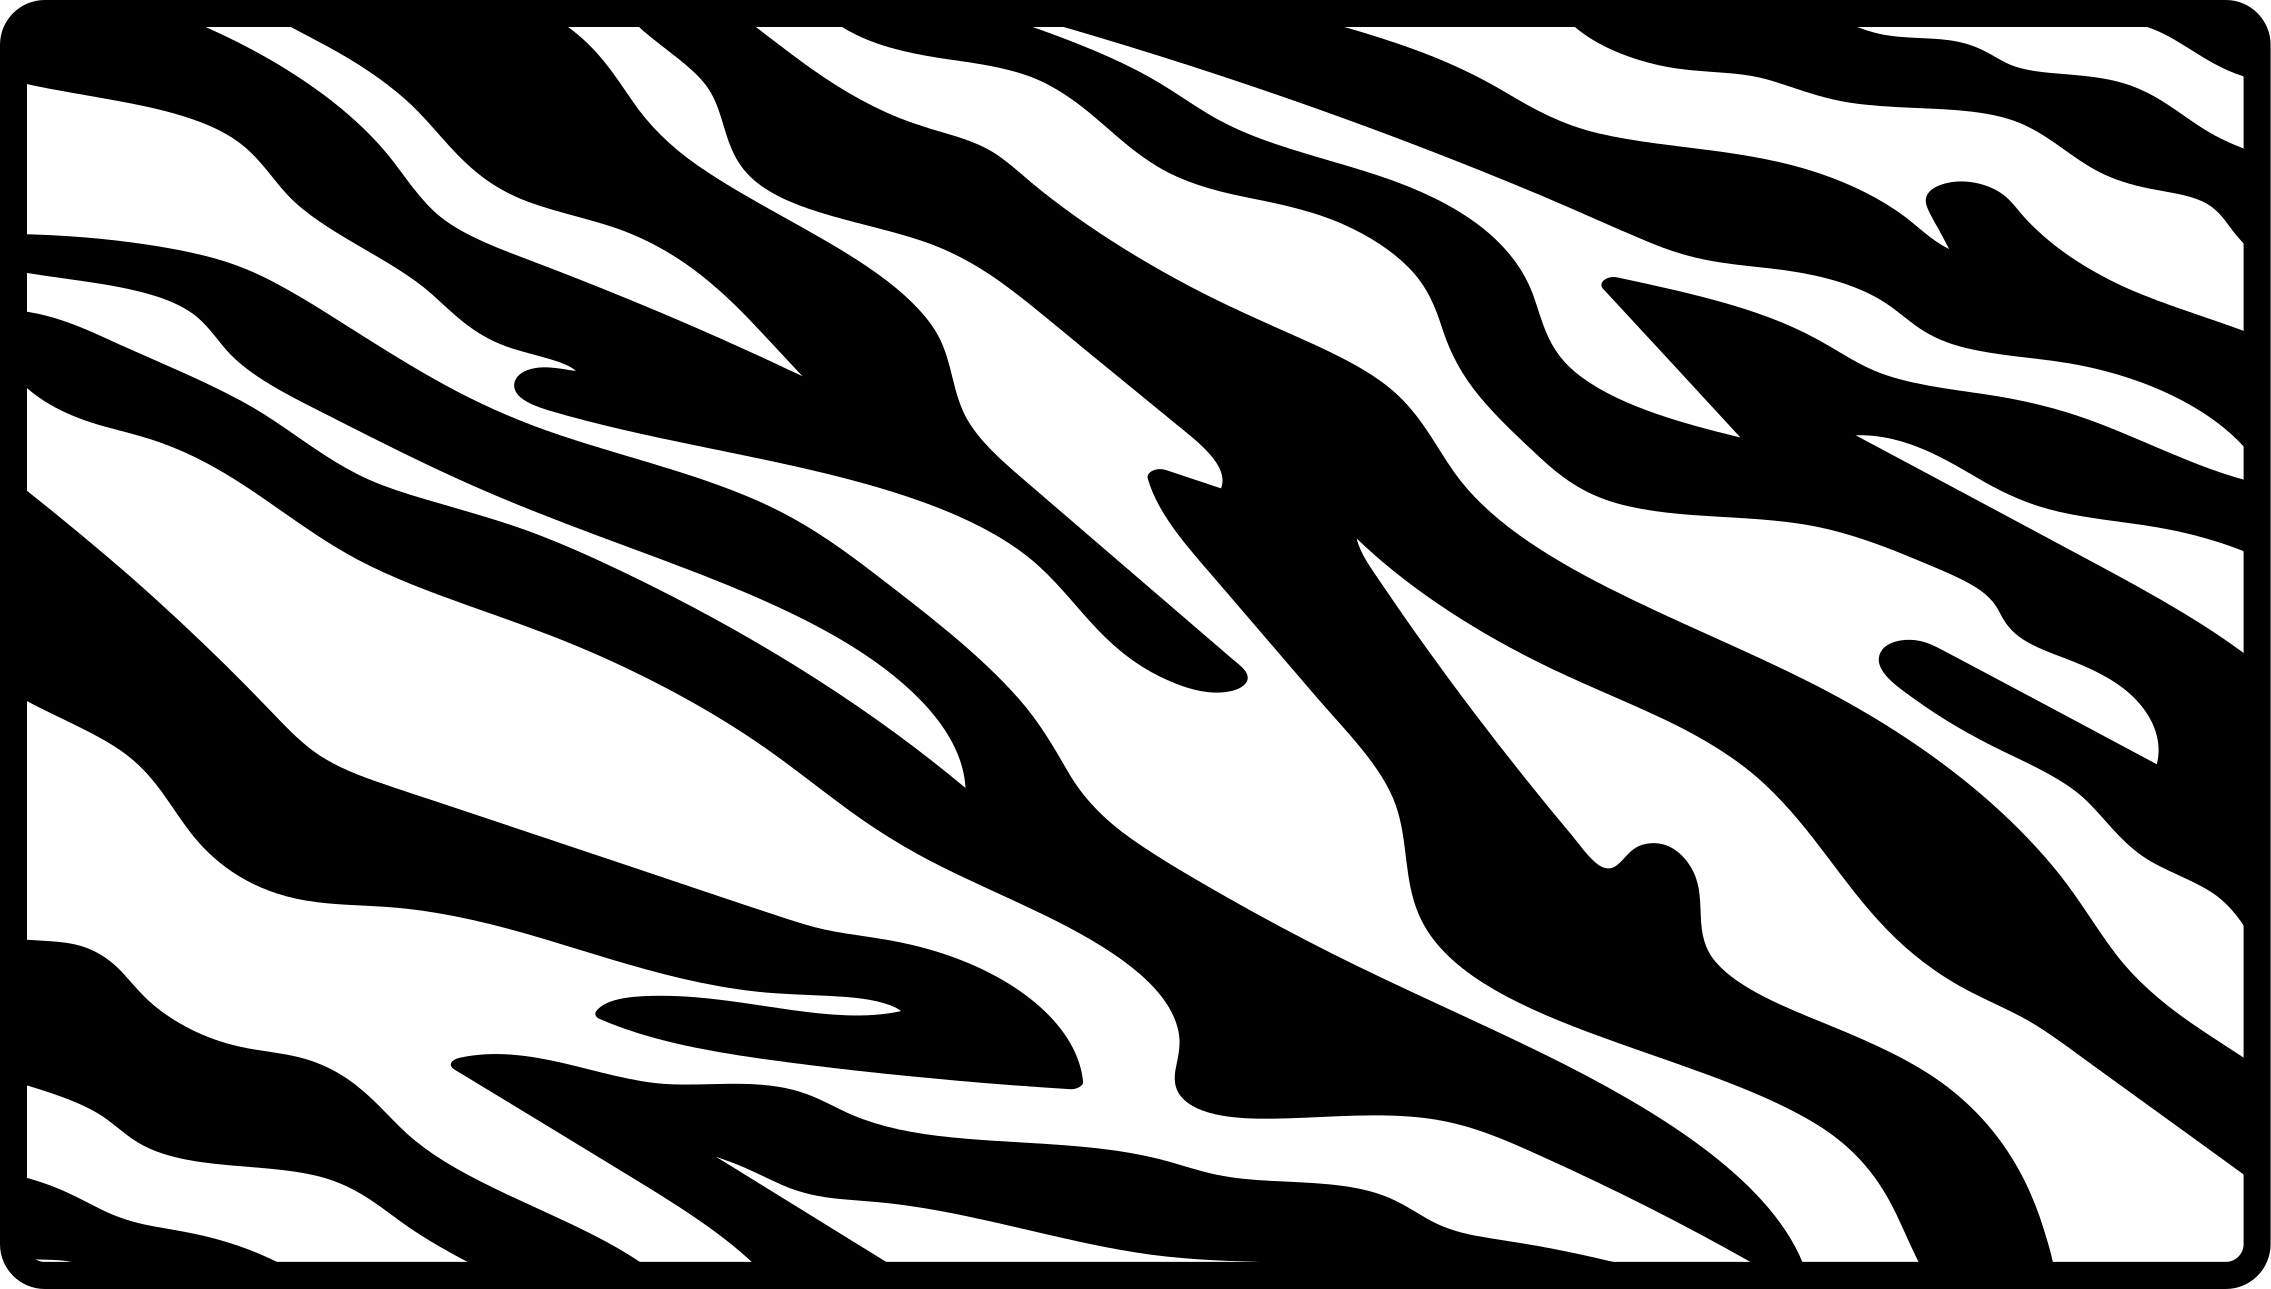 Zebra Print Stencil Template Printable